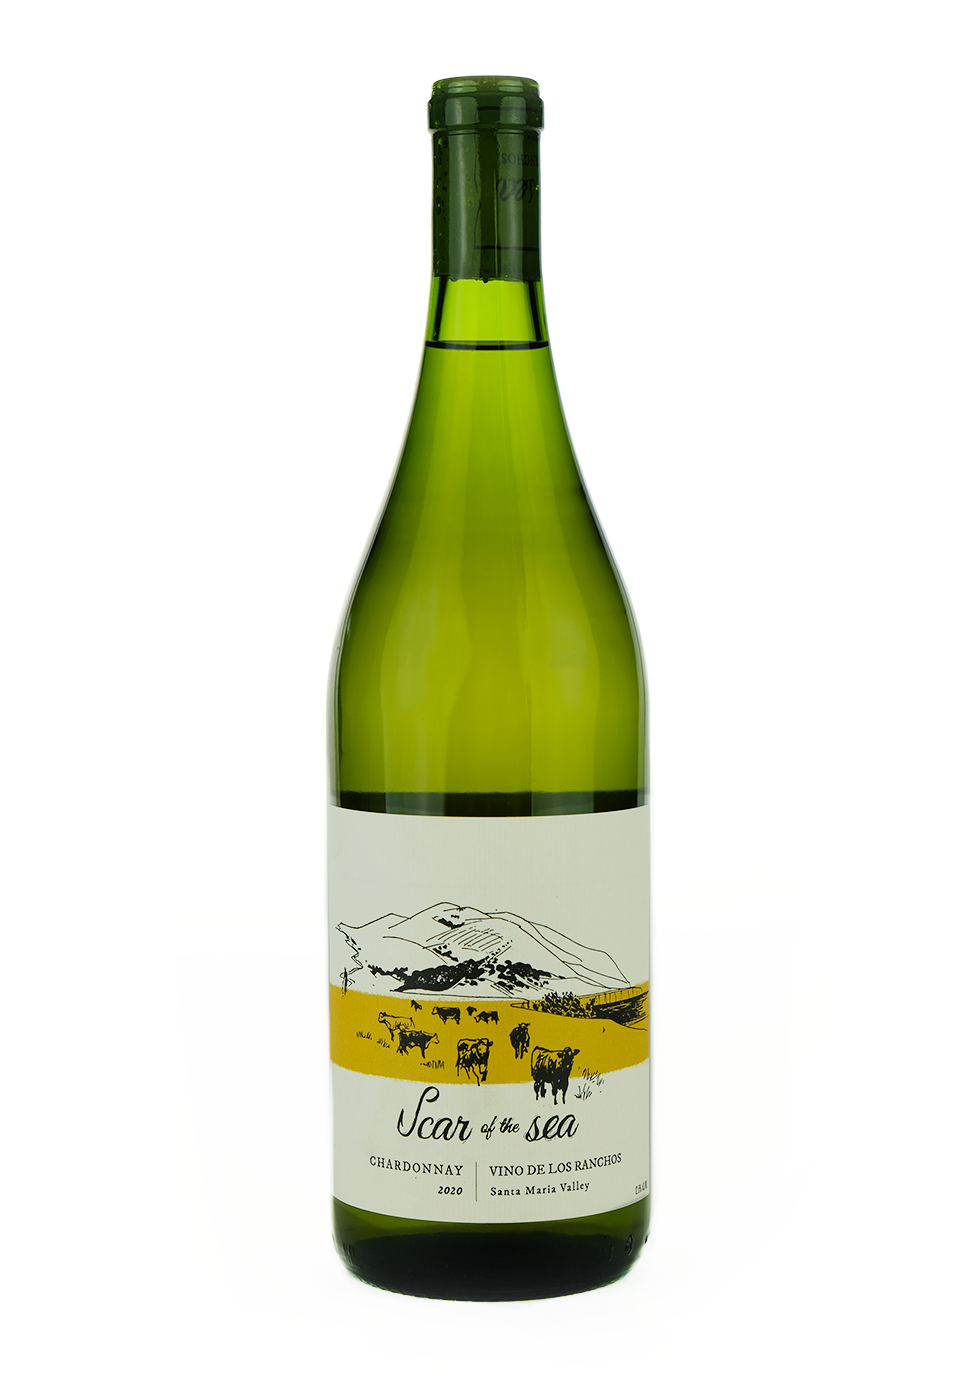 Scar of the Sea 2020 Chardonnay 'Vinos de los Ranchos'